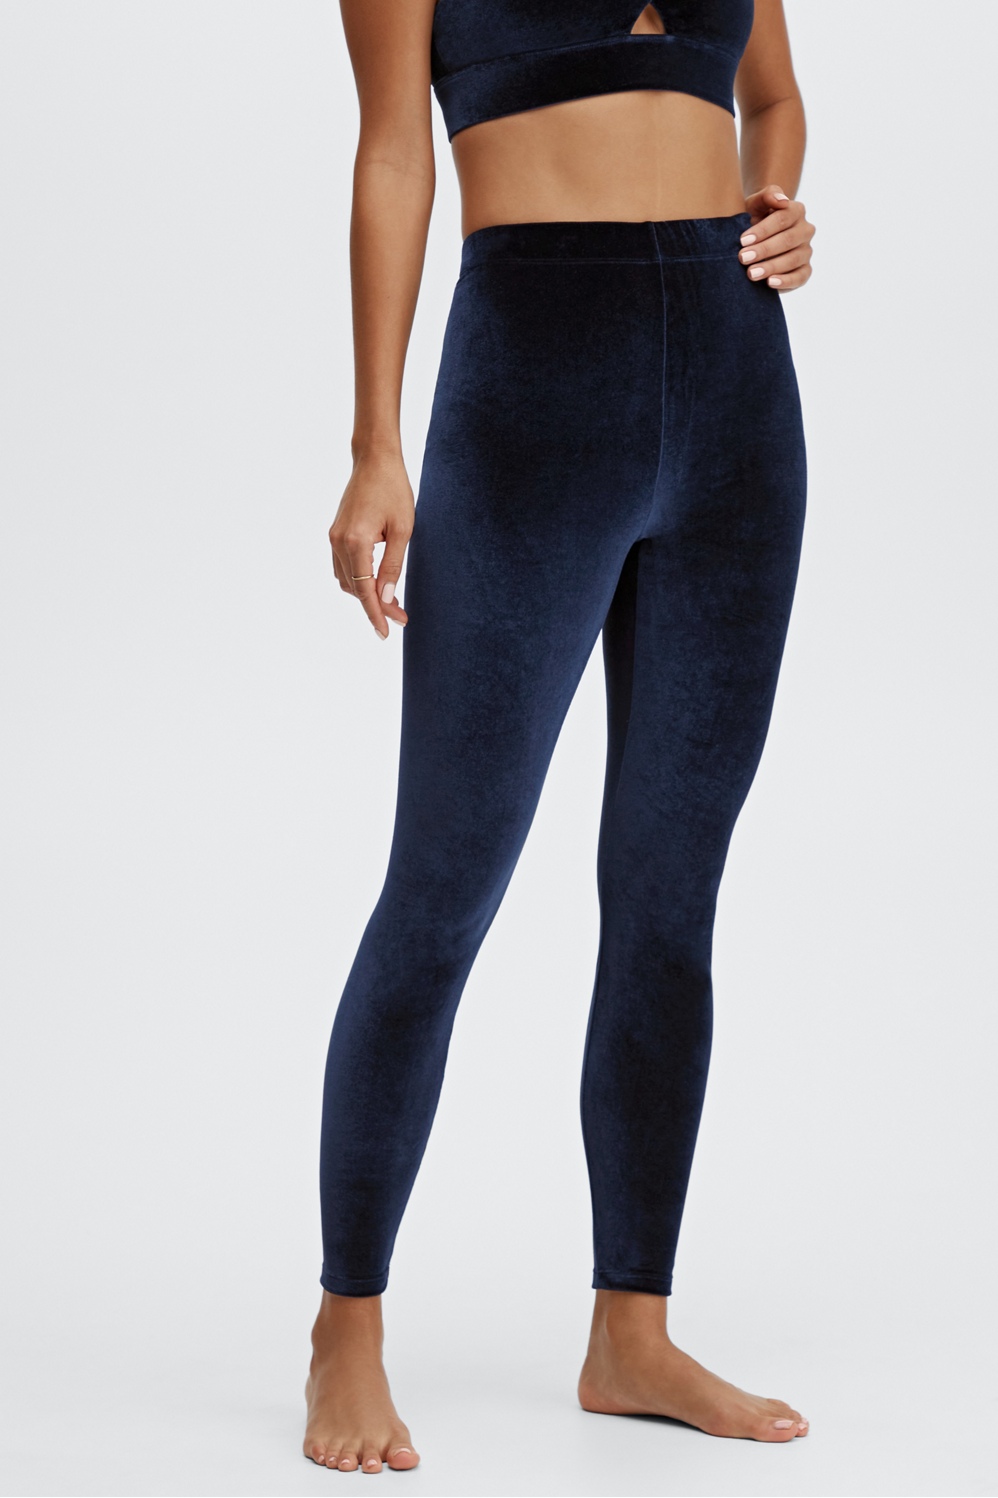 Buy Conceited Velour Velvet Leggings for Women - A236 - Navy Blue - Small  at